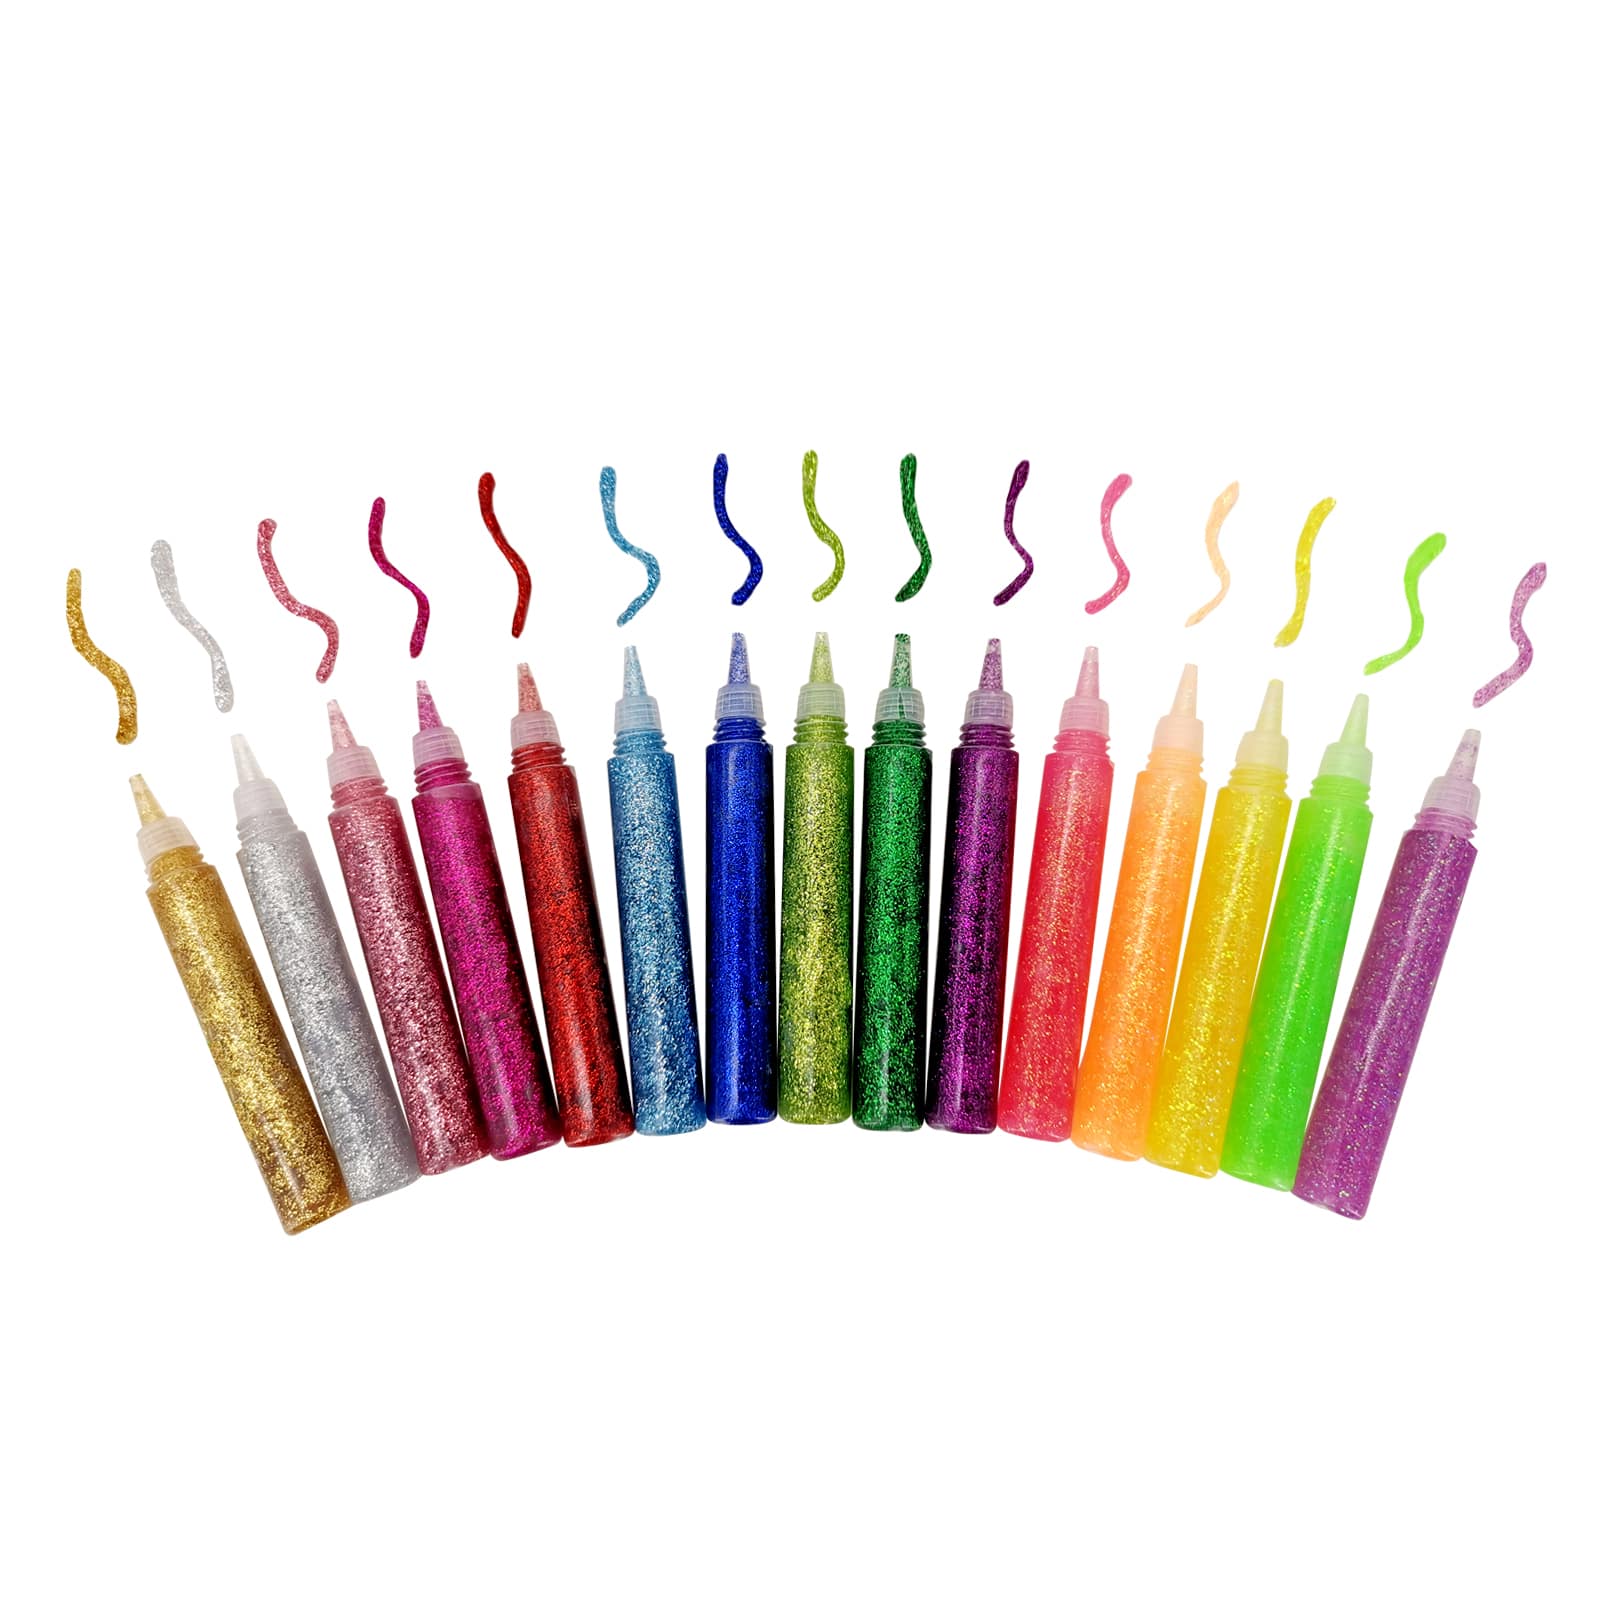 Pack Of 8 Arty Crafty Glitter Glue Pens Assorted Glitter Glue Craft Fun Art Pen 